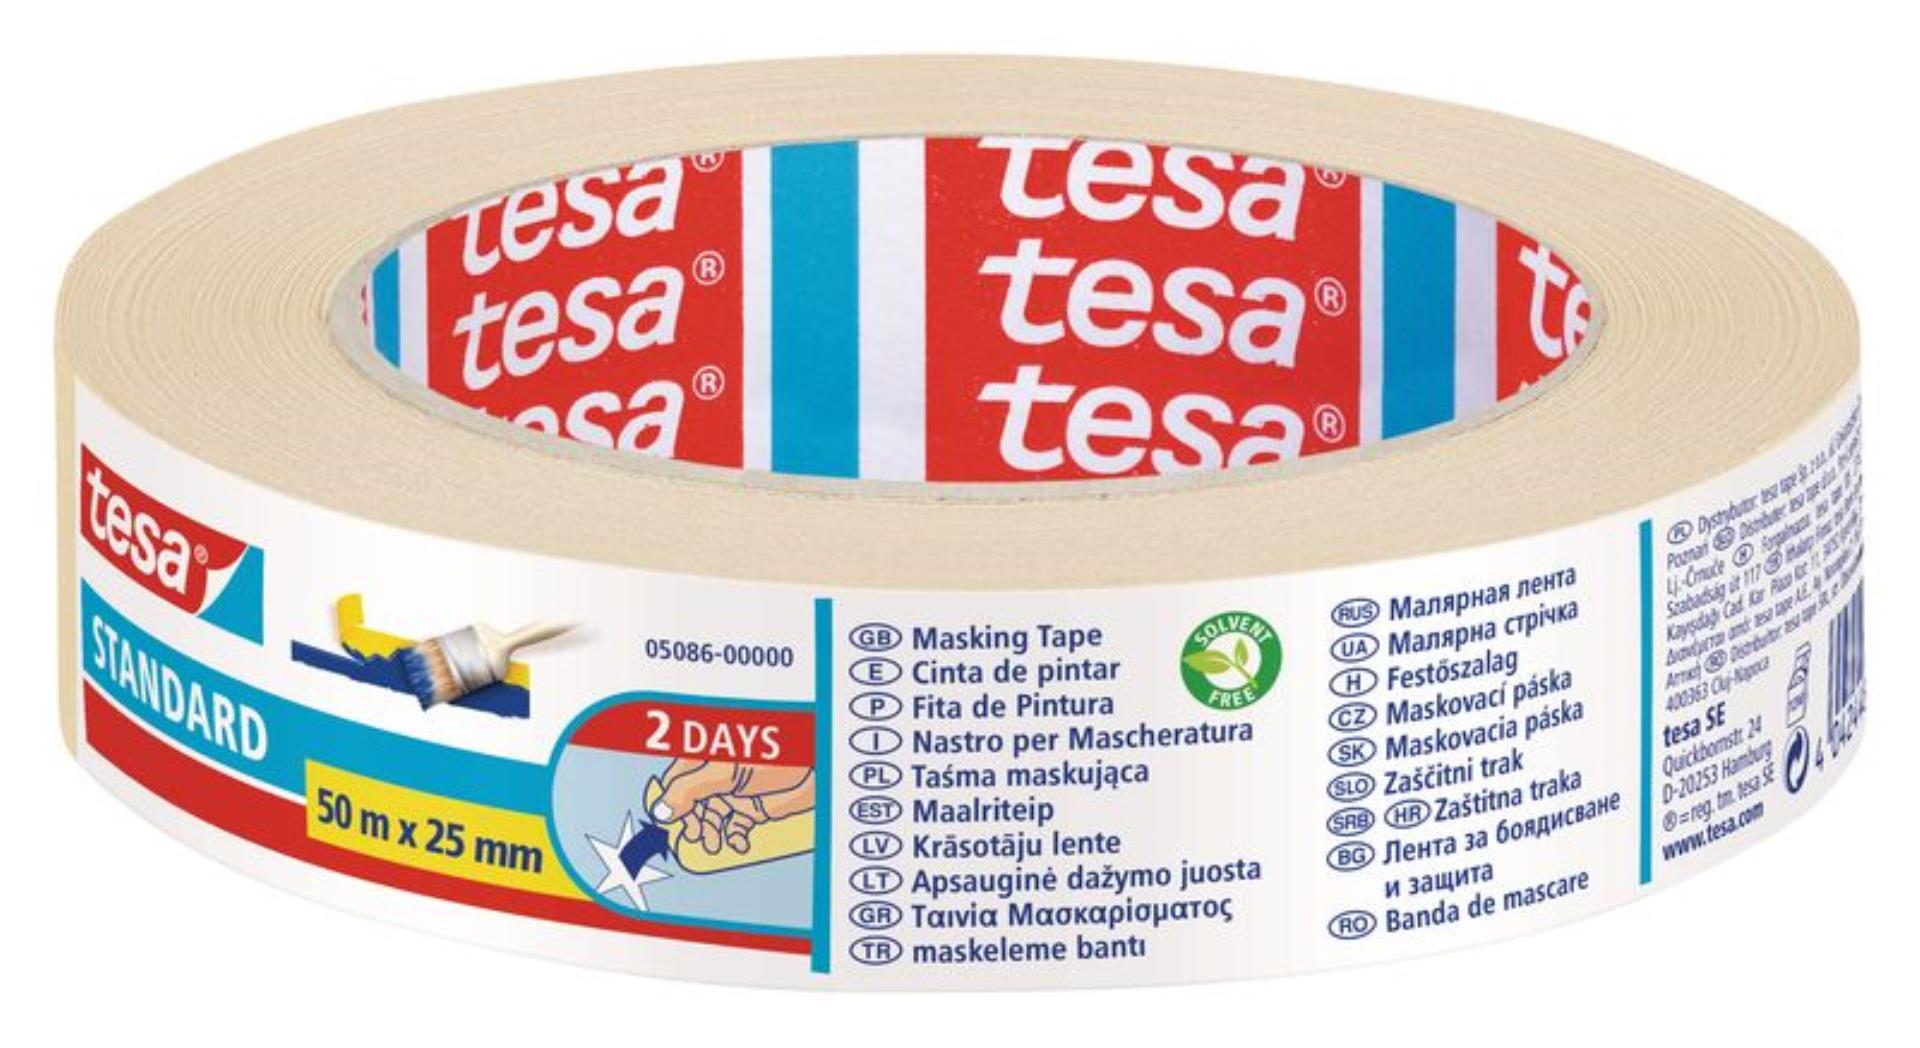 Krepová maskovací páska Tesa - 25 mm x 50 m, lehce odstranitelná